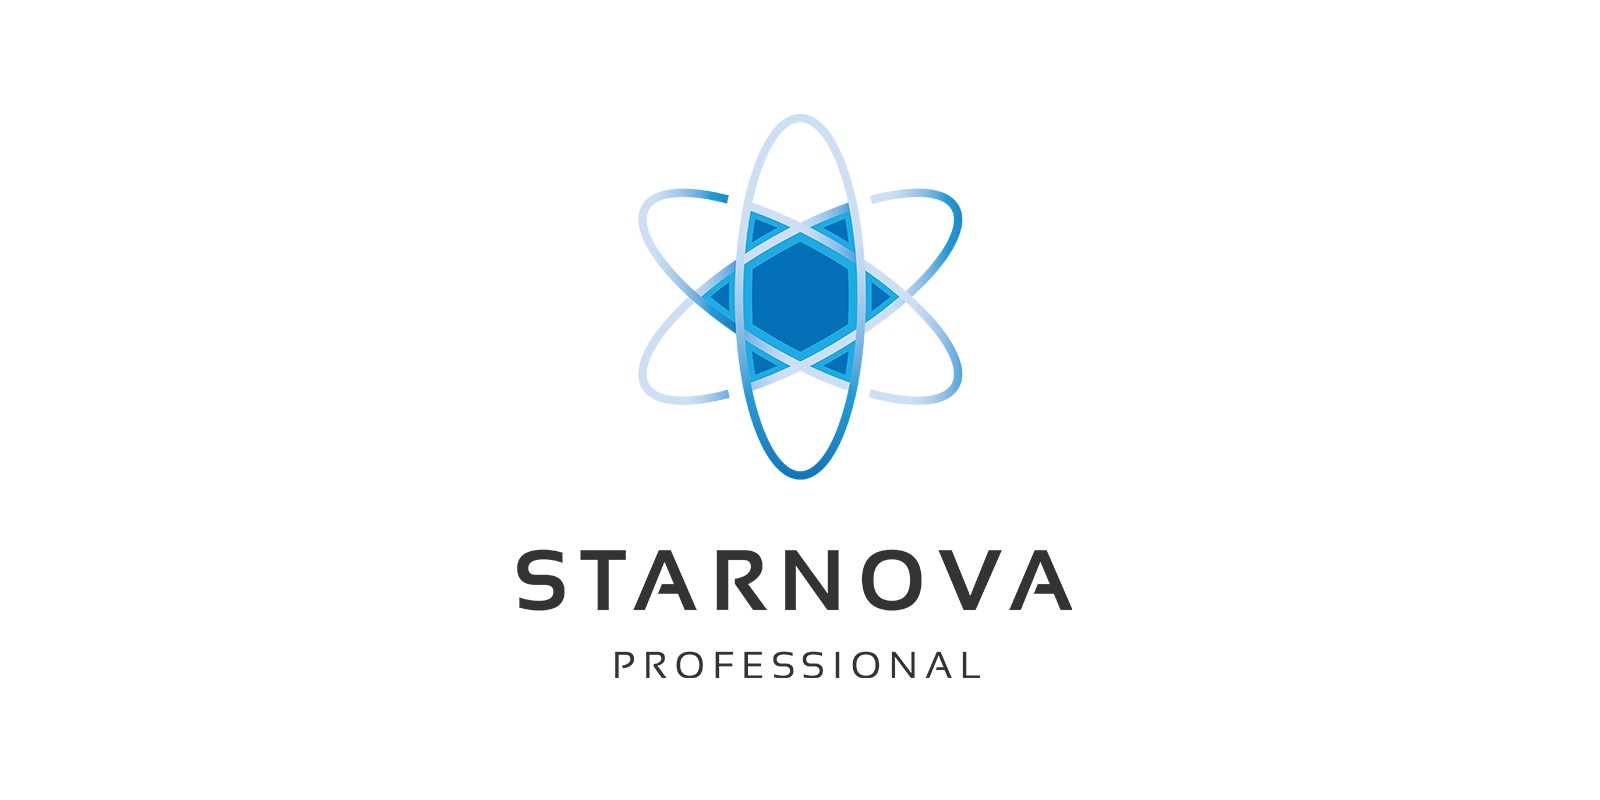 Starnova logo